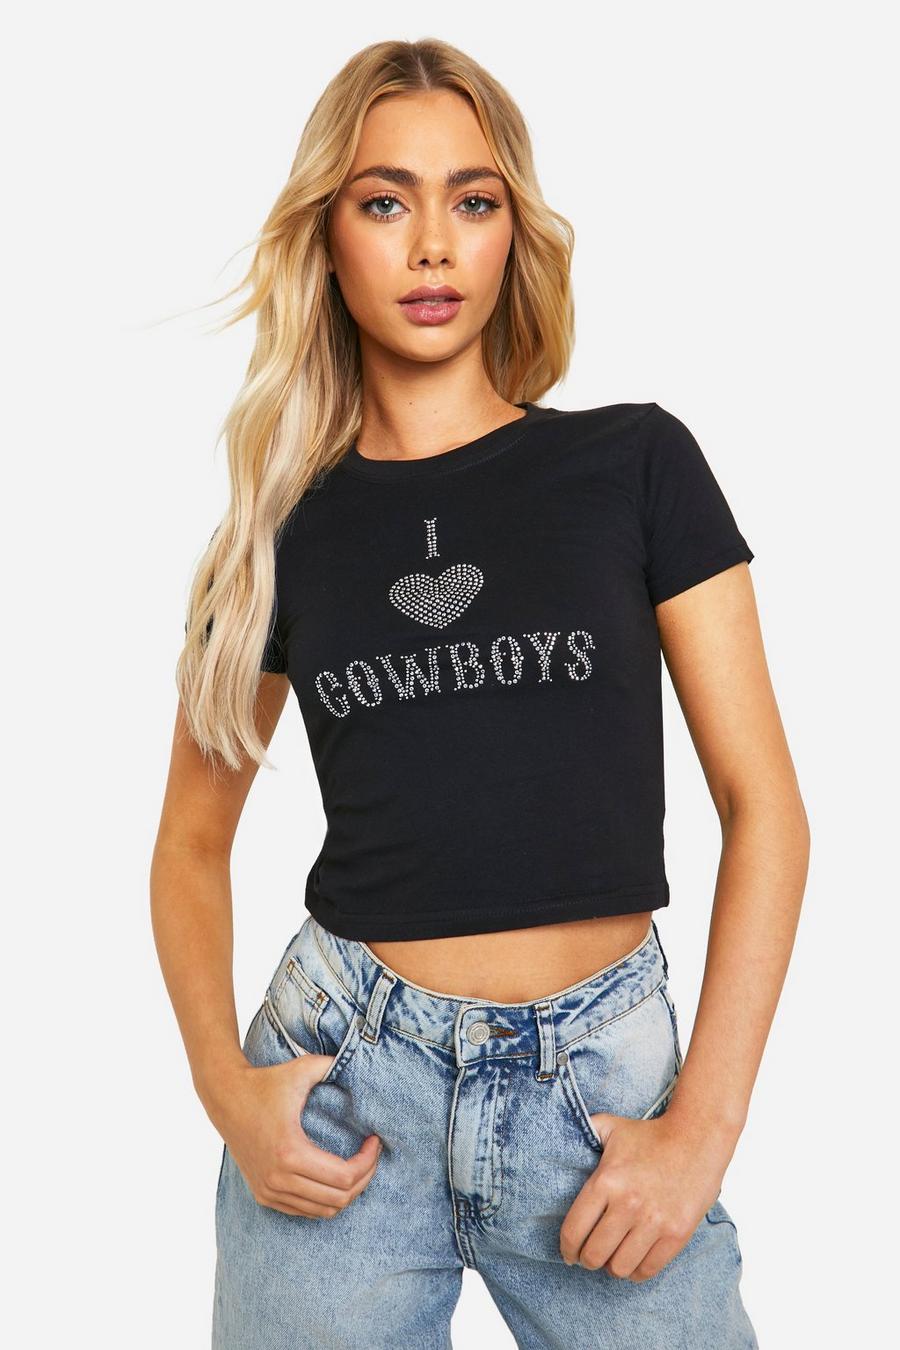 Black Hotfix I Heart Cowboys Baby T-Shirt